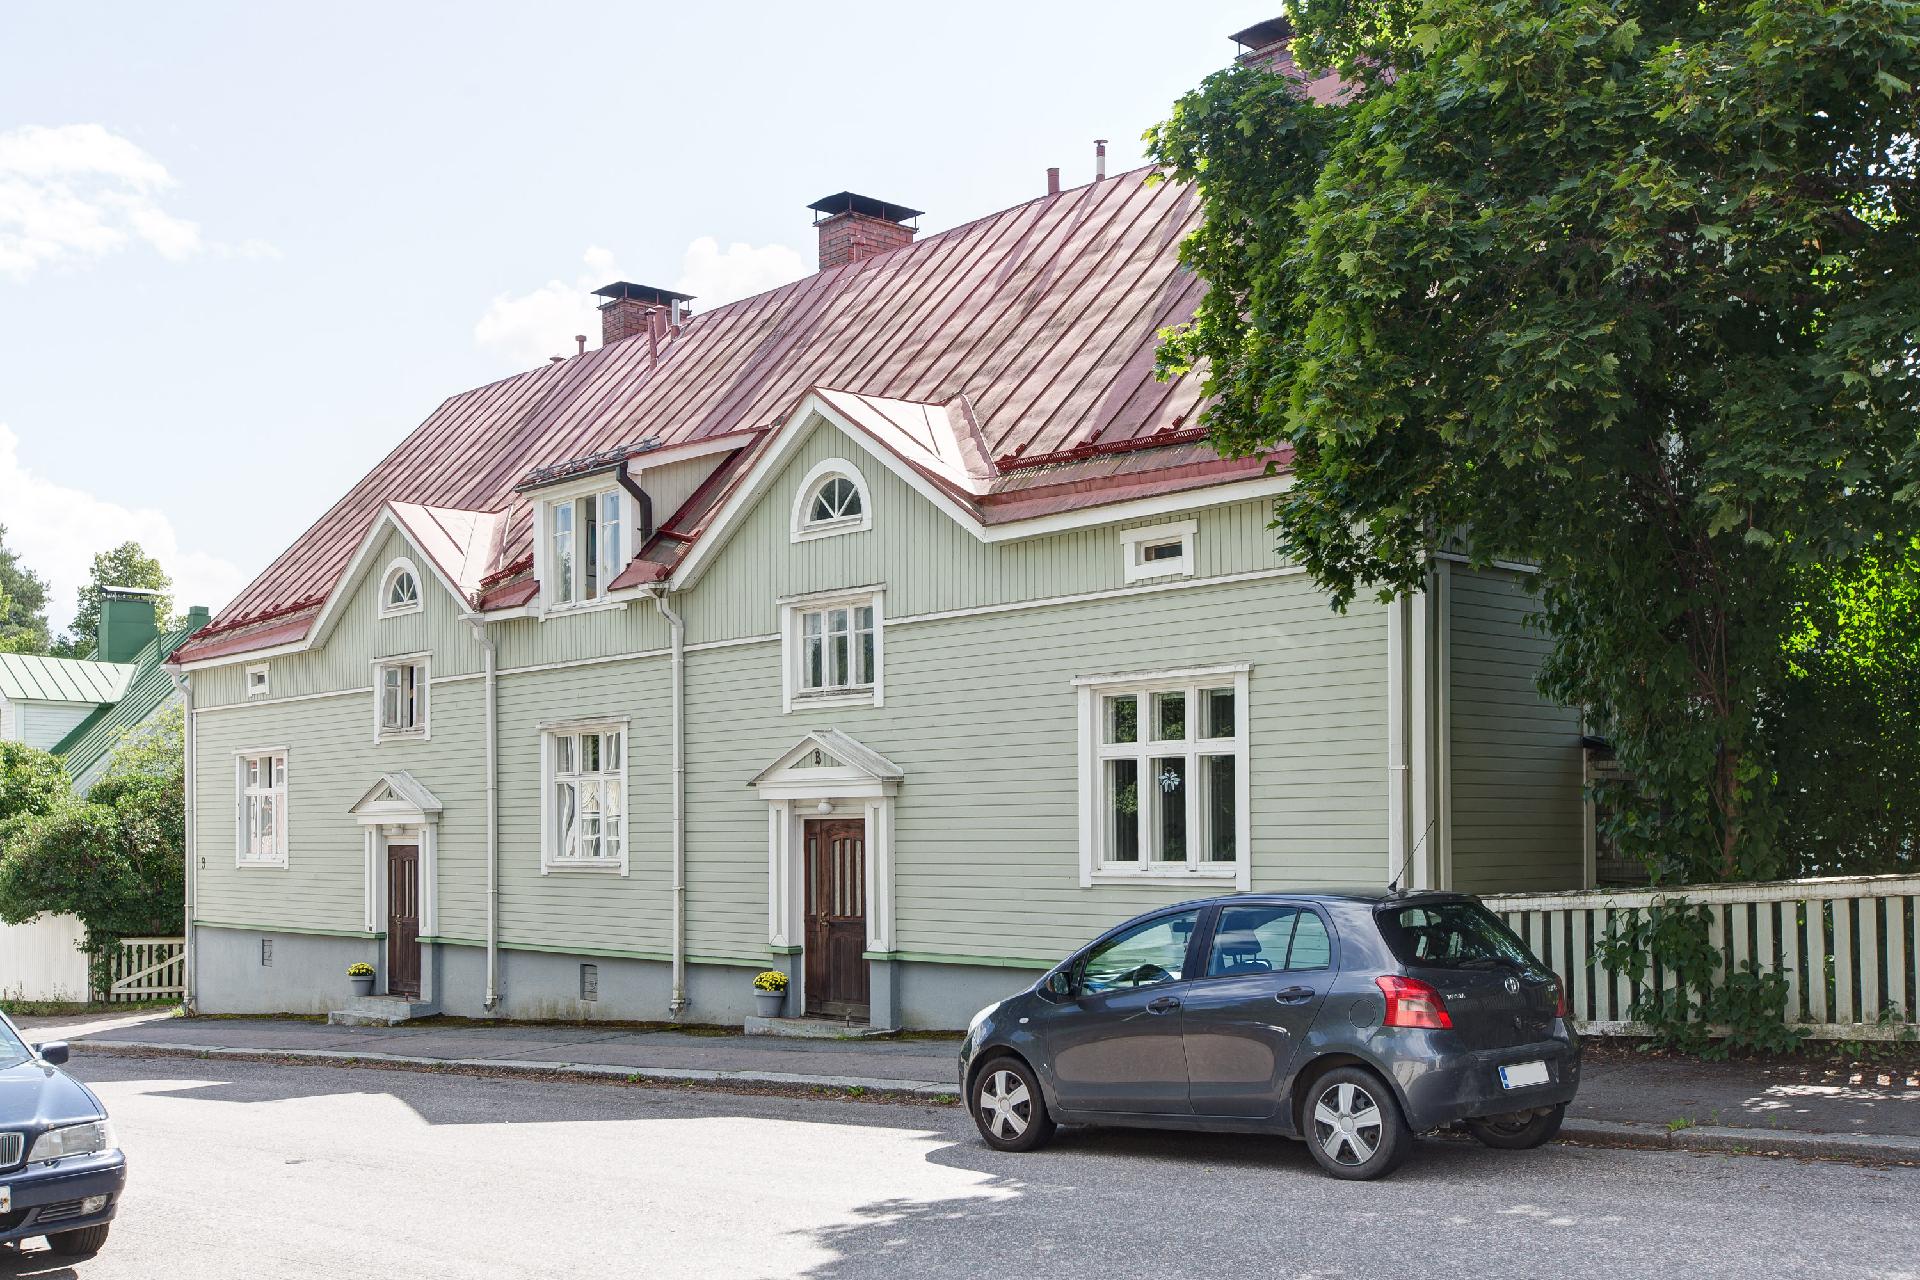 Asunto Oy Tahmelantie 9 on vuonna 1926 valmistunut pieni taloyhtiö, jossa on 6 huoneistoa